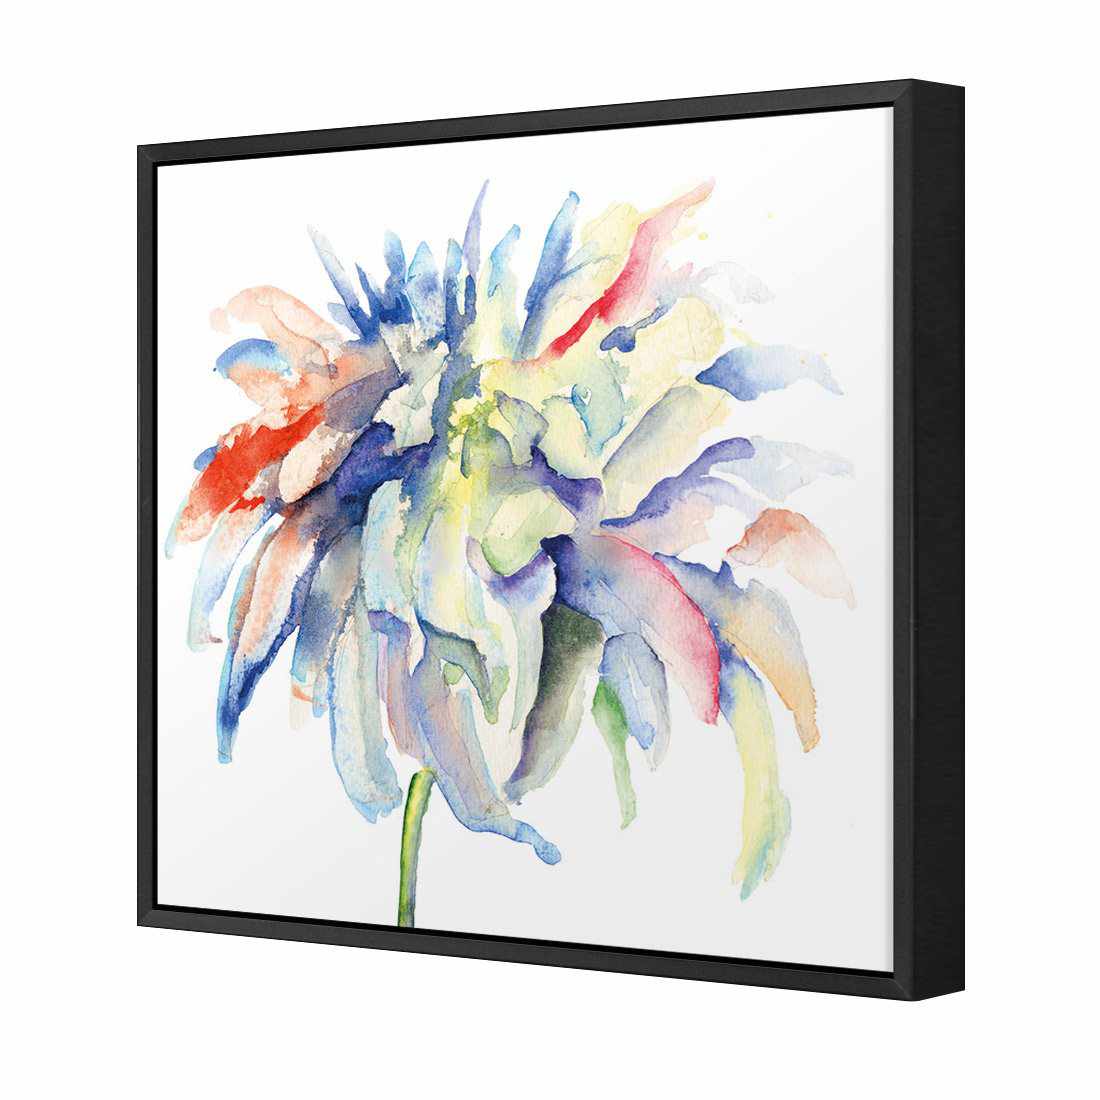 Fairy Floss Canvas Art-Canvas-Wall Art Designs-30x30cm-Canvas - Black Frame-Wall Art Designs